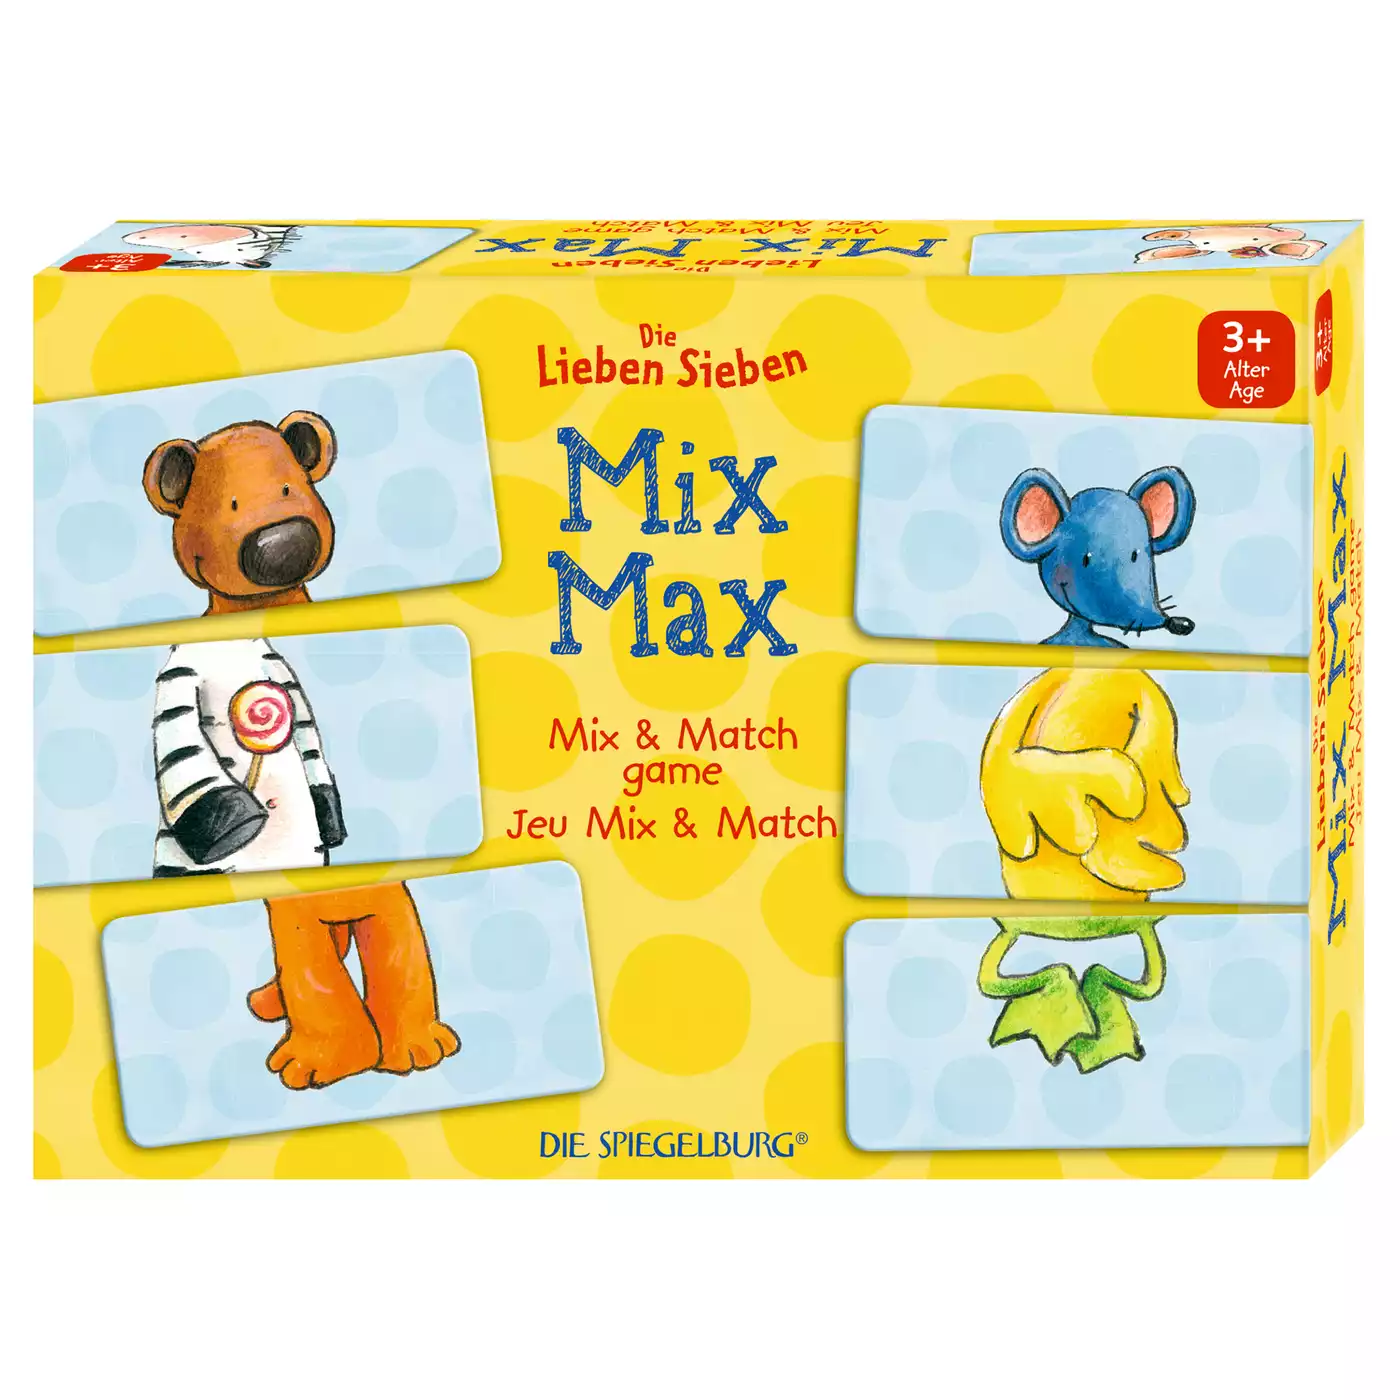 Mix-Max Spiel DIE SPIEGELBURG 2000574527802 3